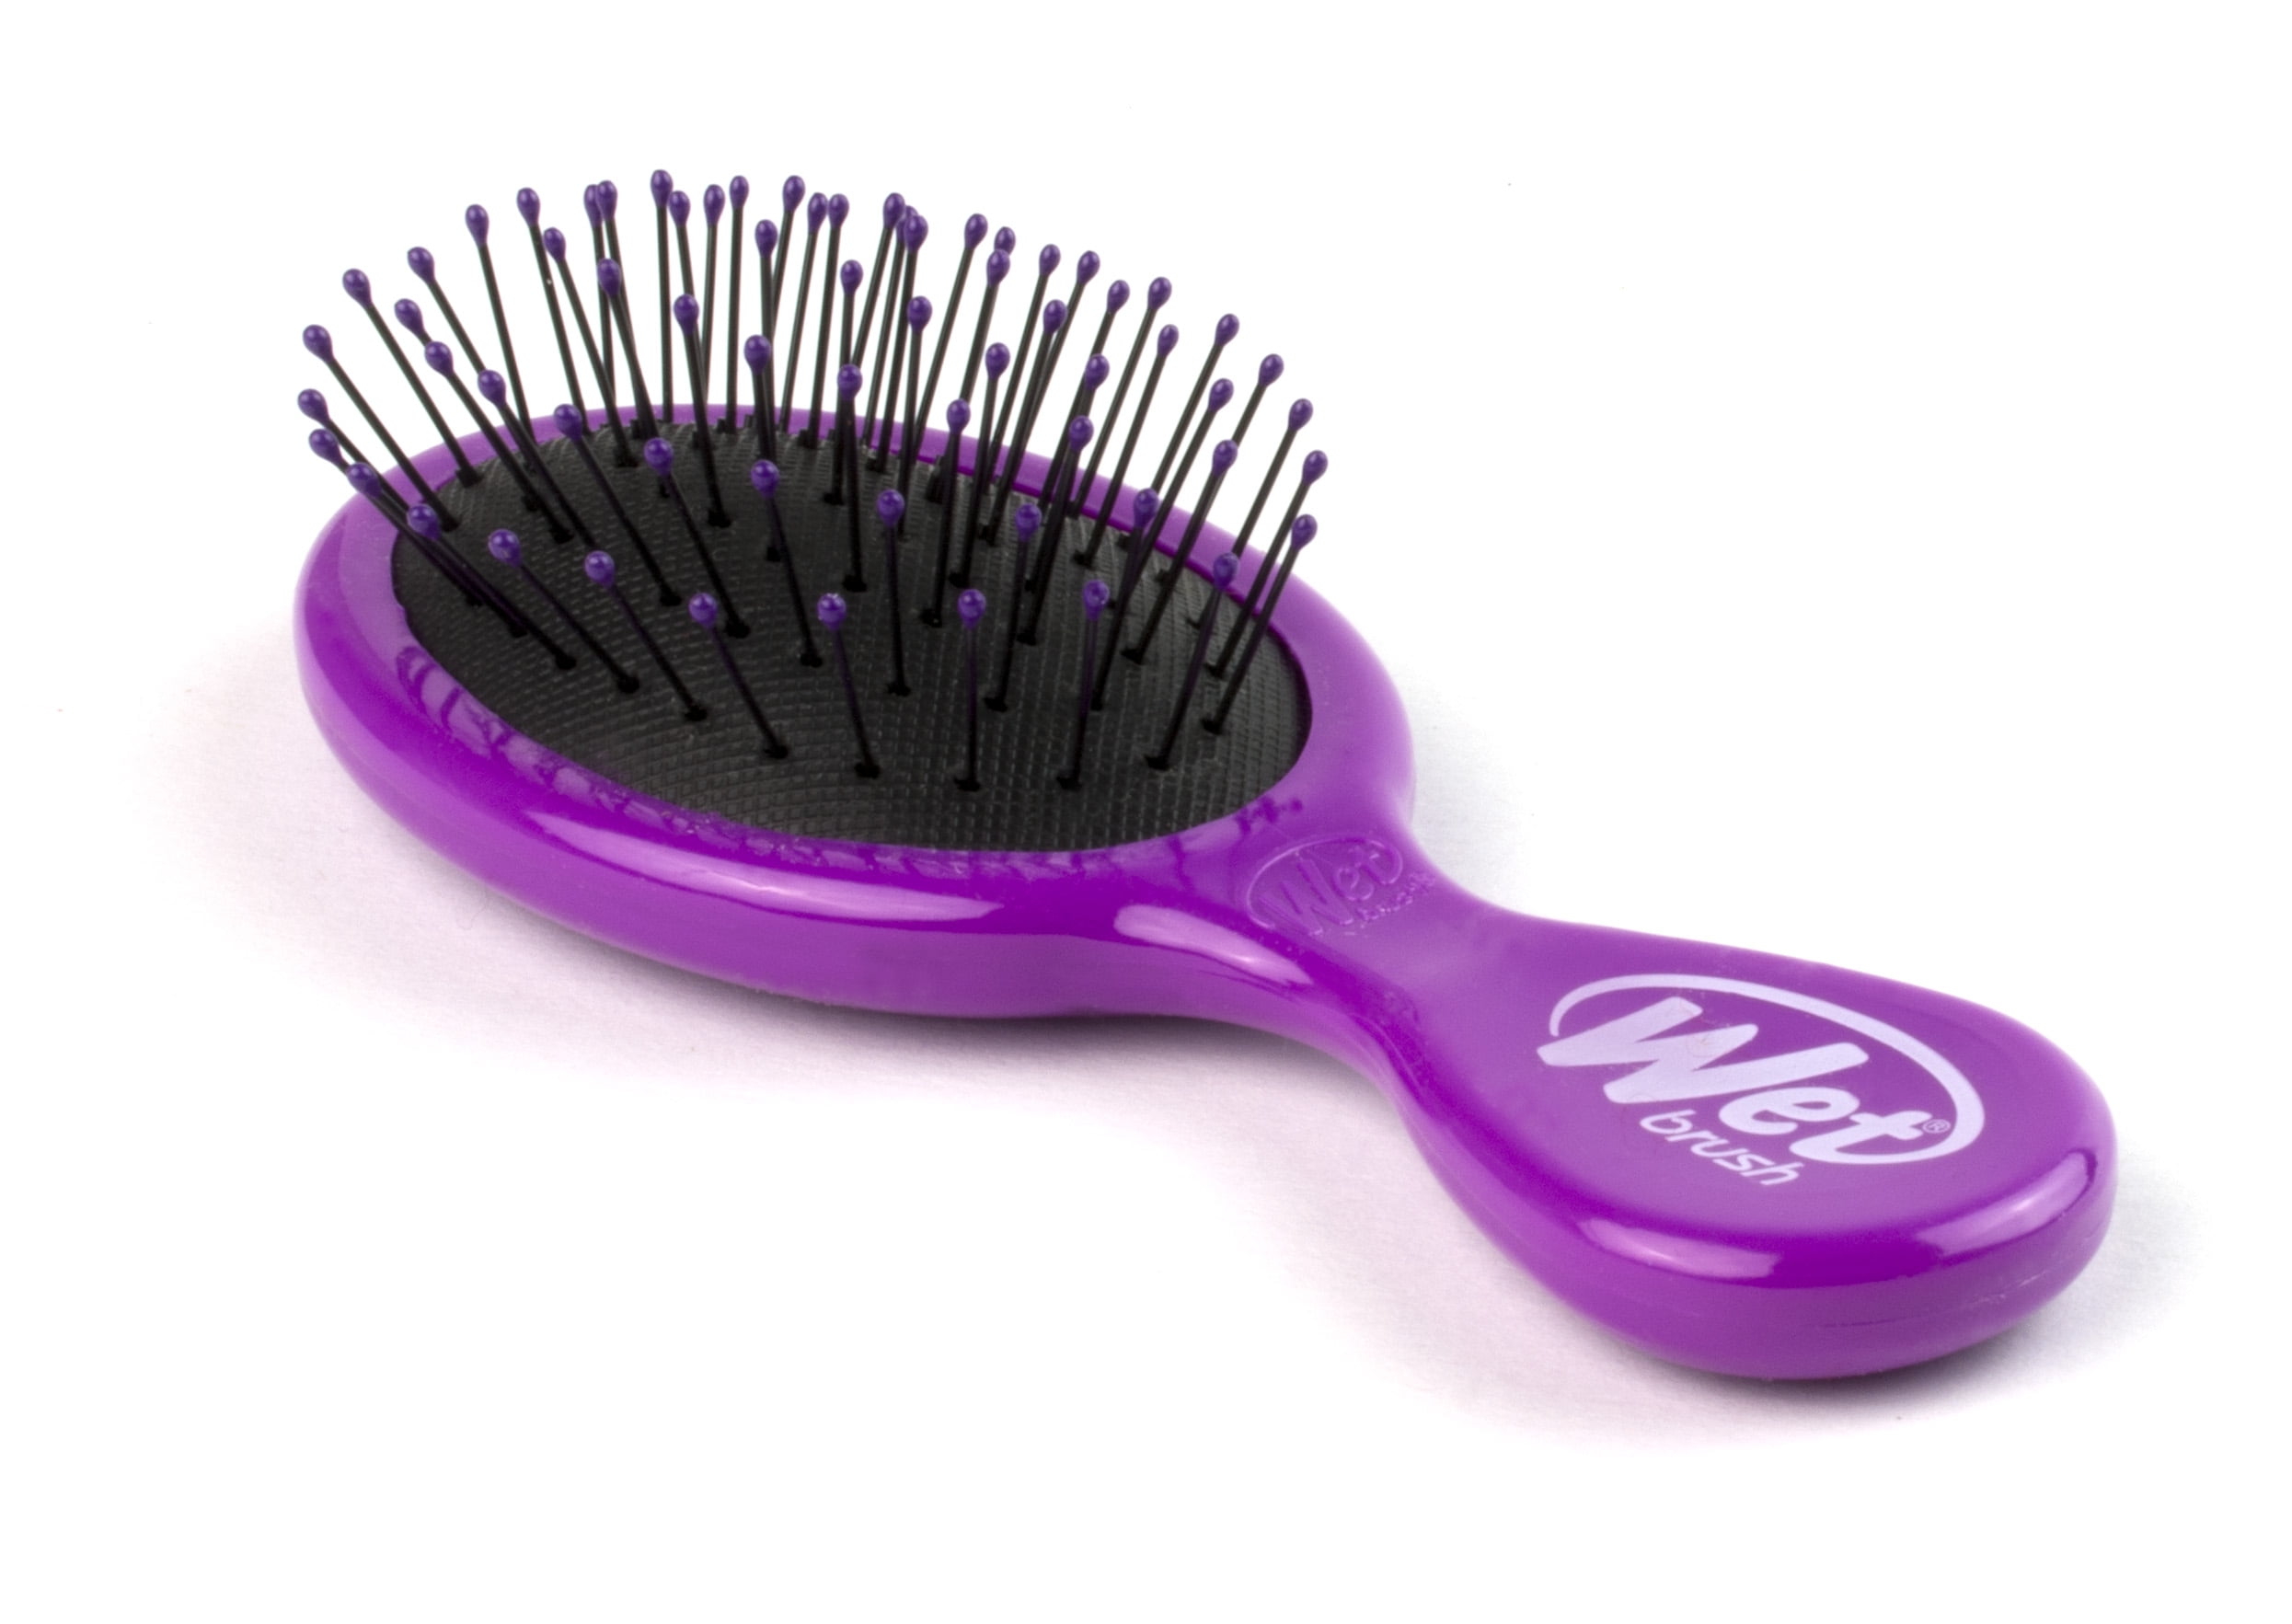 Wet Brush Mini Detangler Hair Brush For Less Pain, Effort and Breakage -  Solid Sky Blue